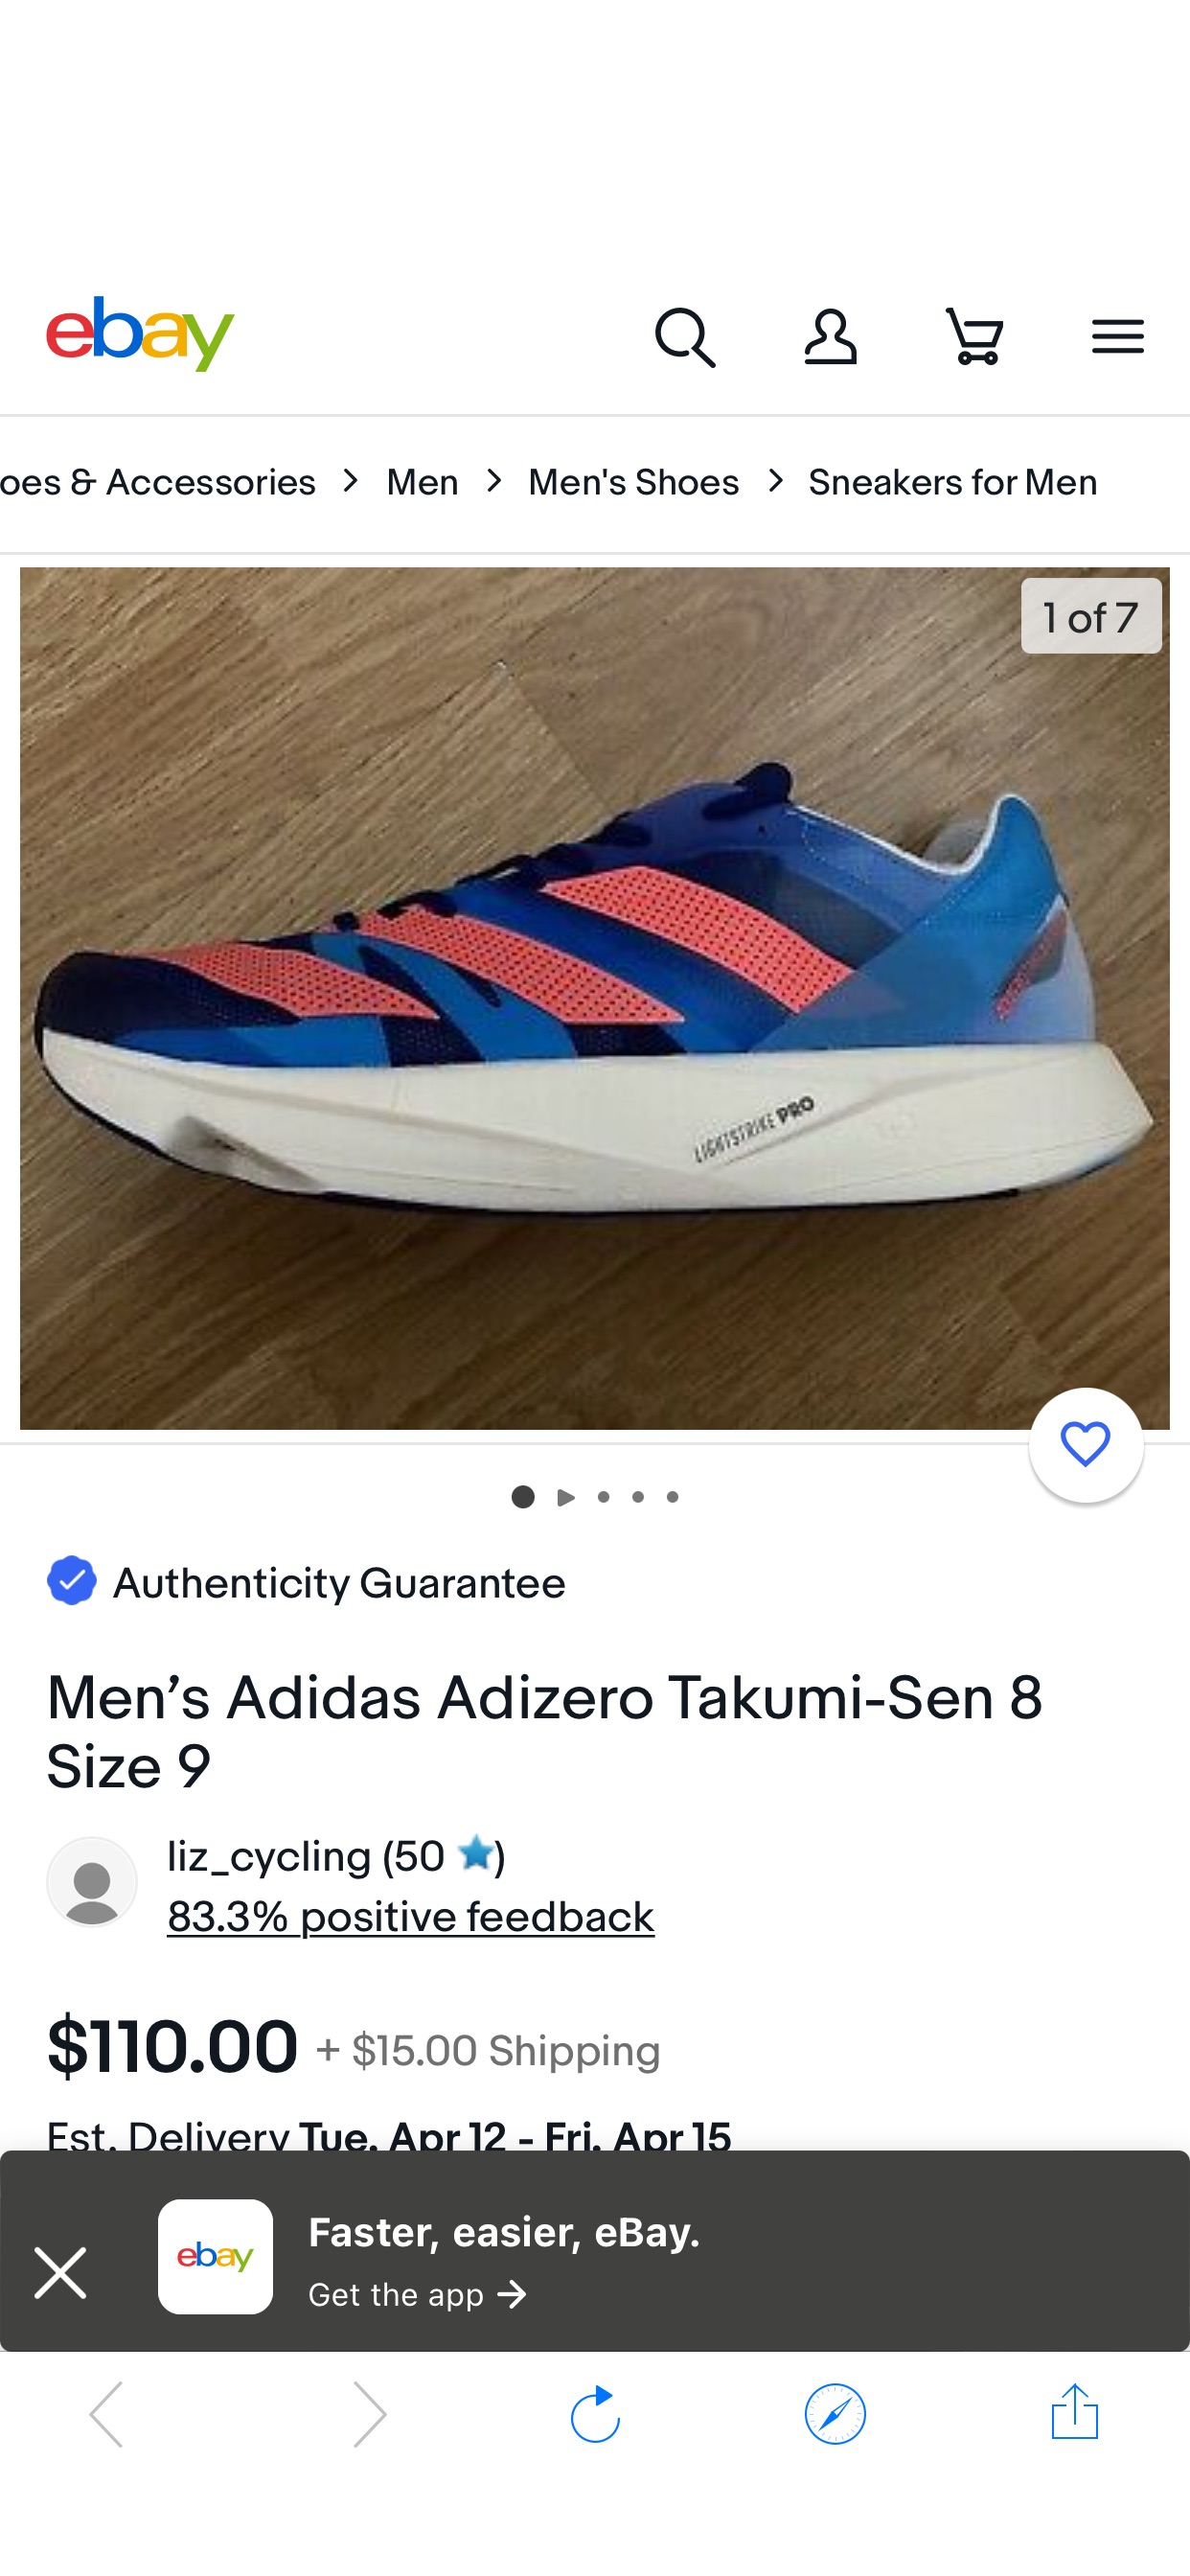 Men’s Adidas Adizero Takumi-Sen 8 Size 9 | eBay 阿迪达斯男士最新跑鞋